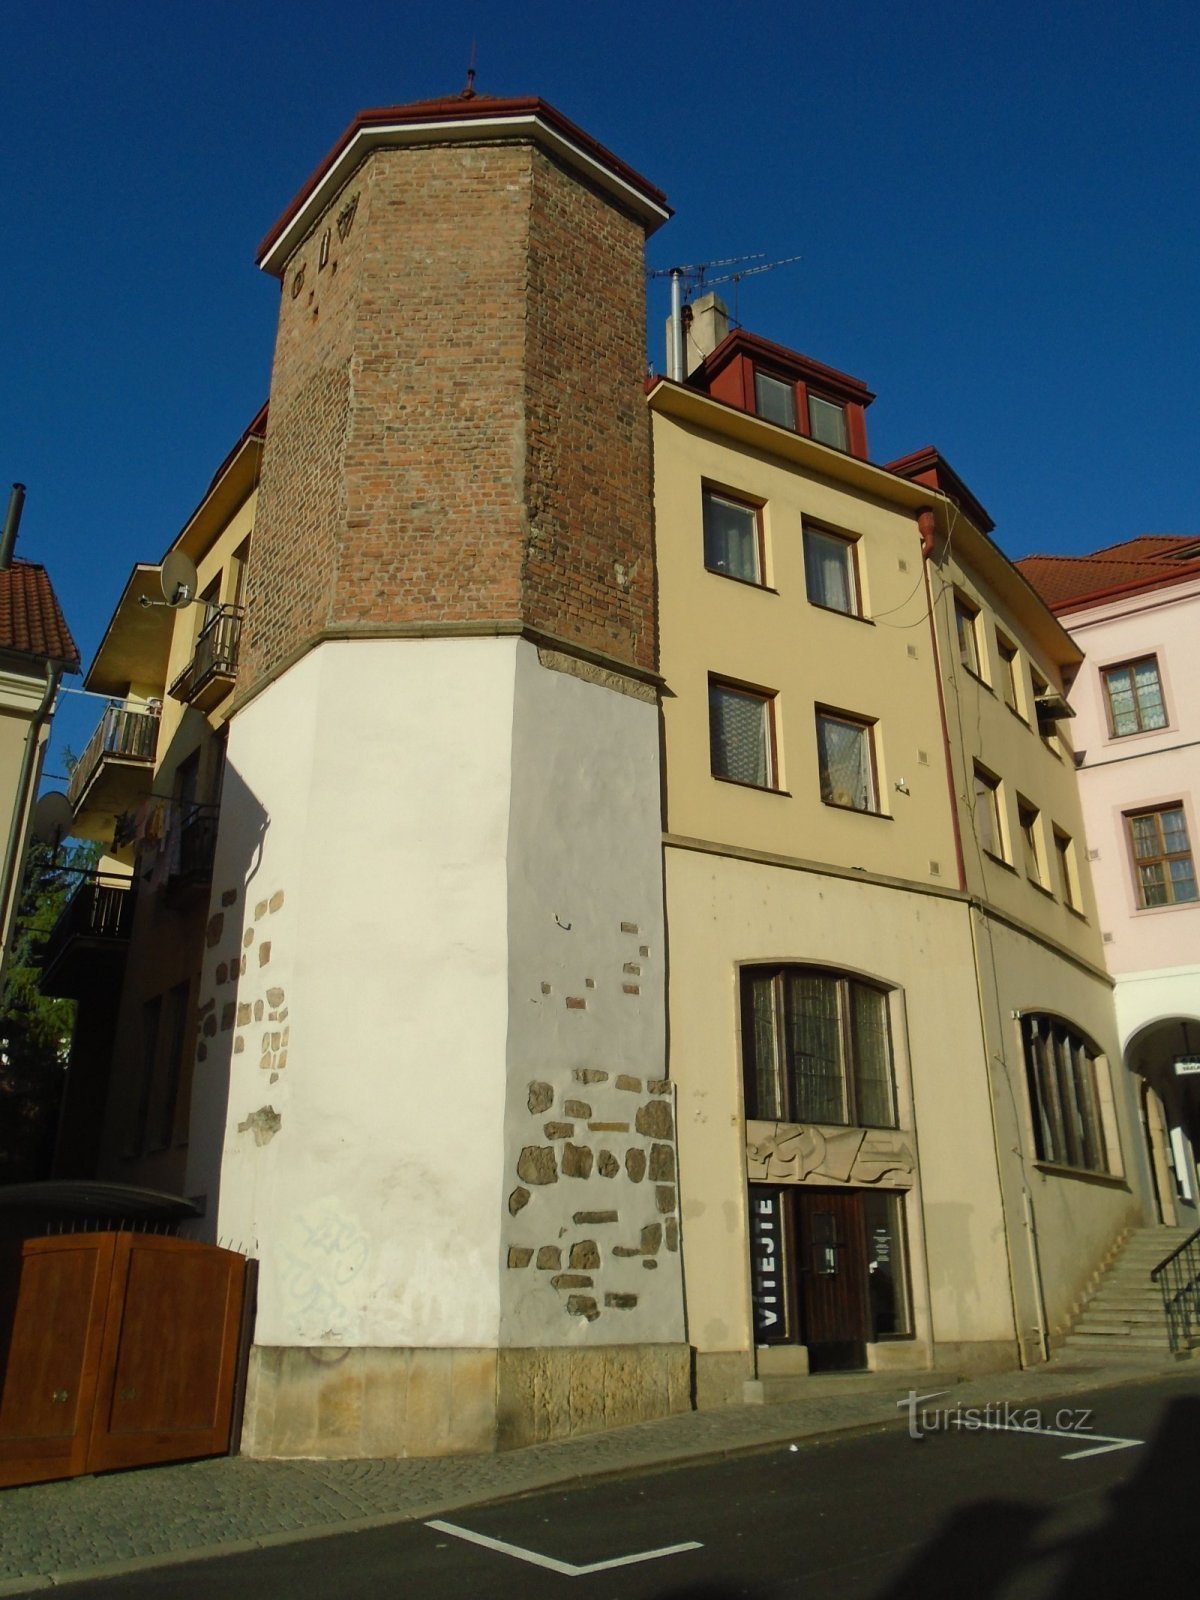 Malé náměstí no. 2 (Hradec Králové, 25.4.2020. huhtikuuta XNUMX)